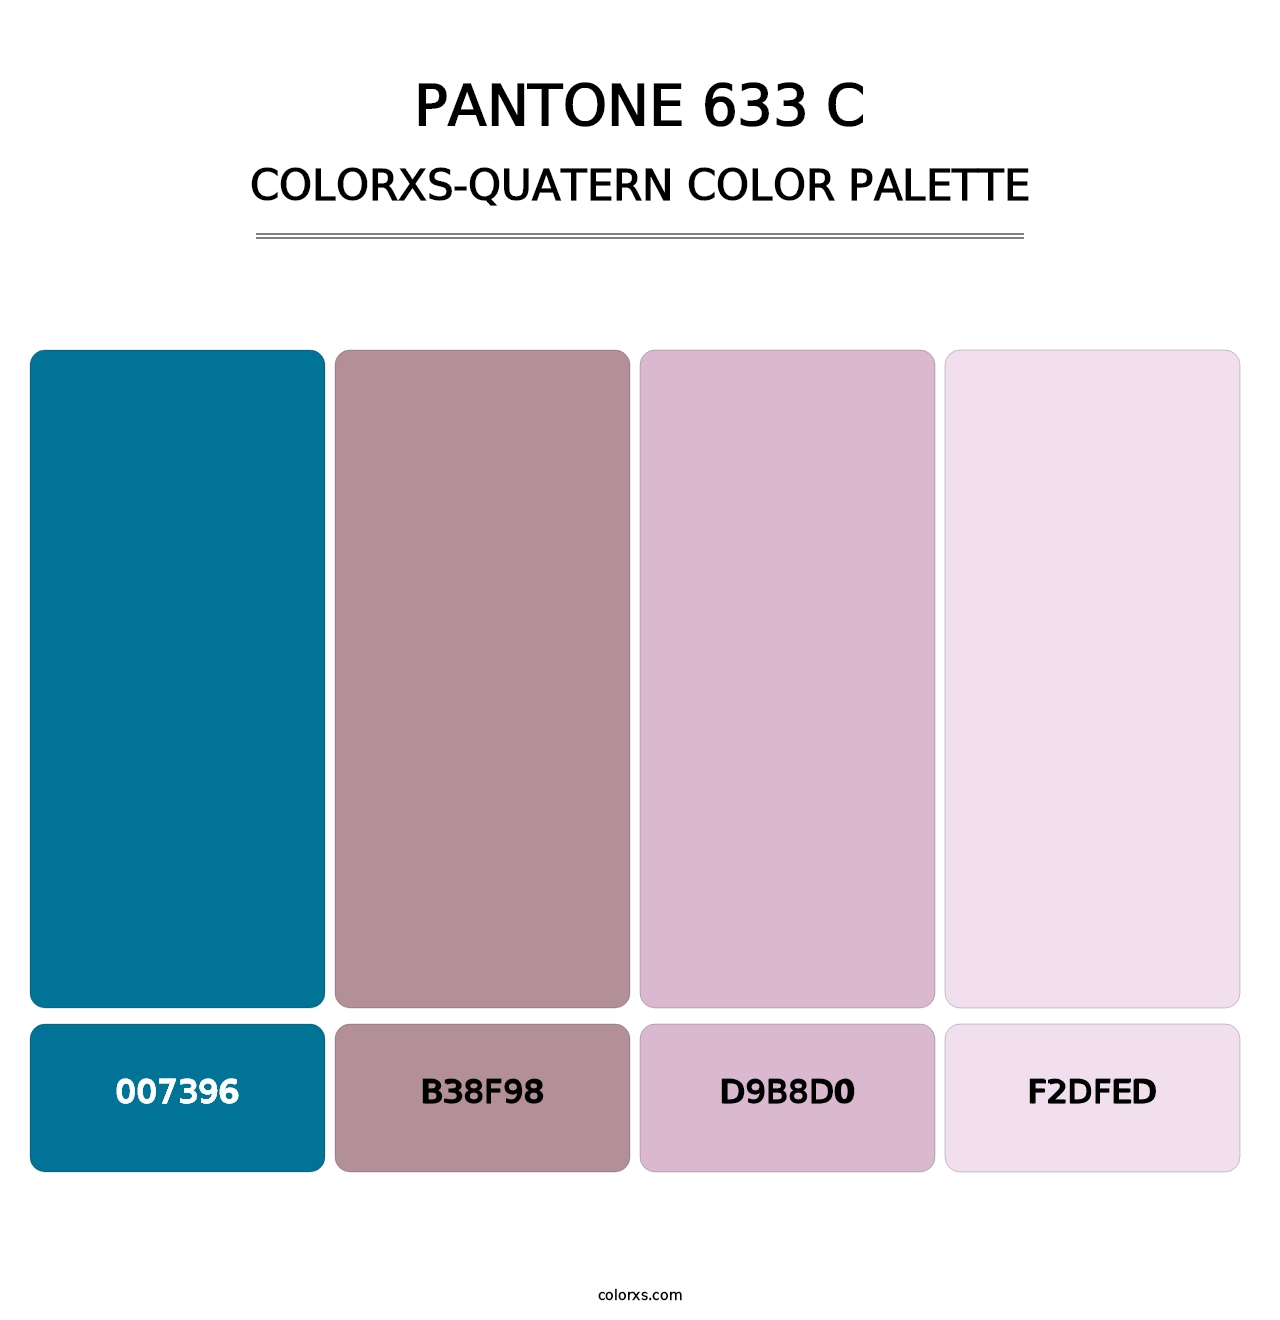 PANTONE 633 C - Colorxs Quatern Palette